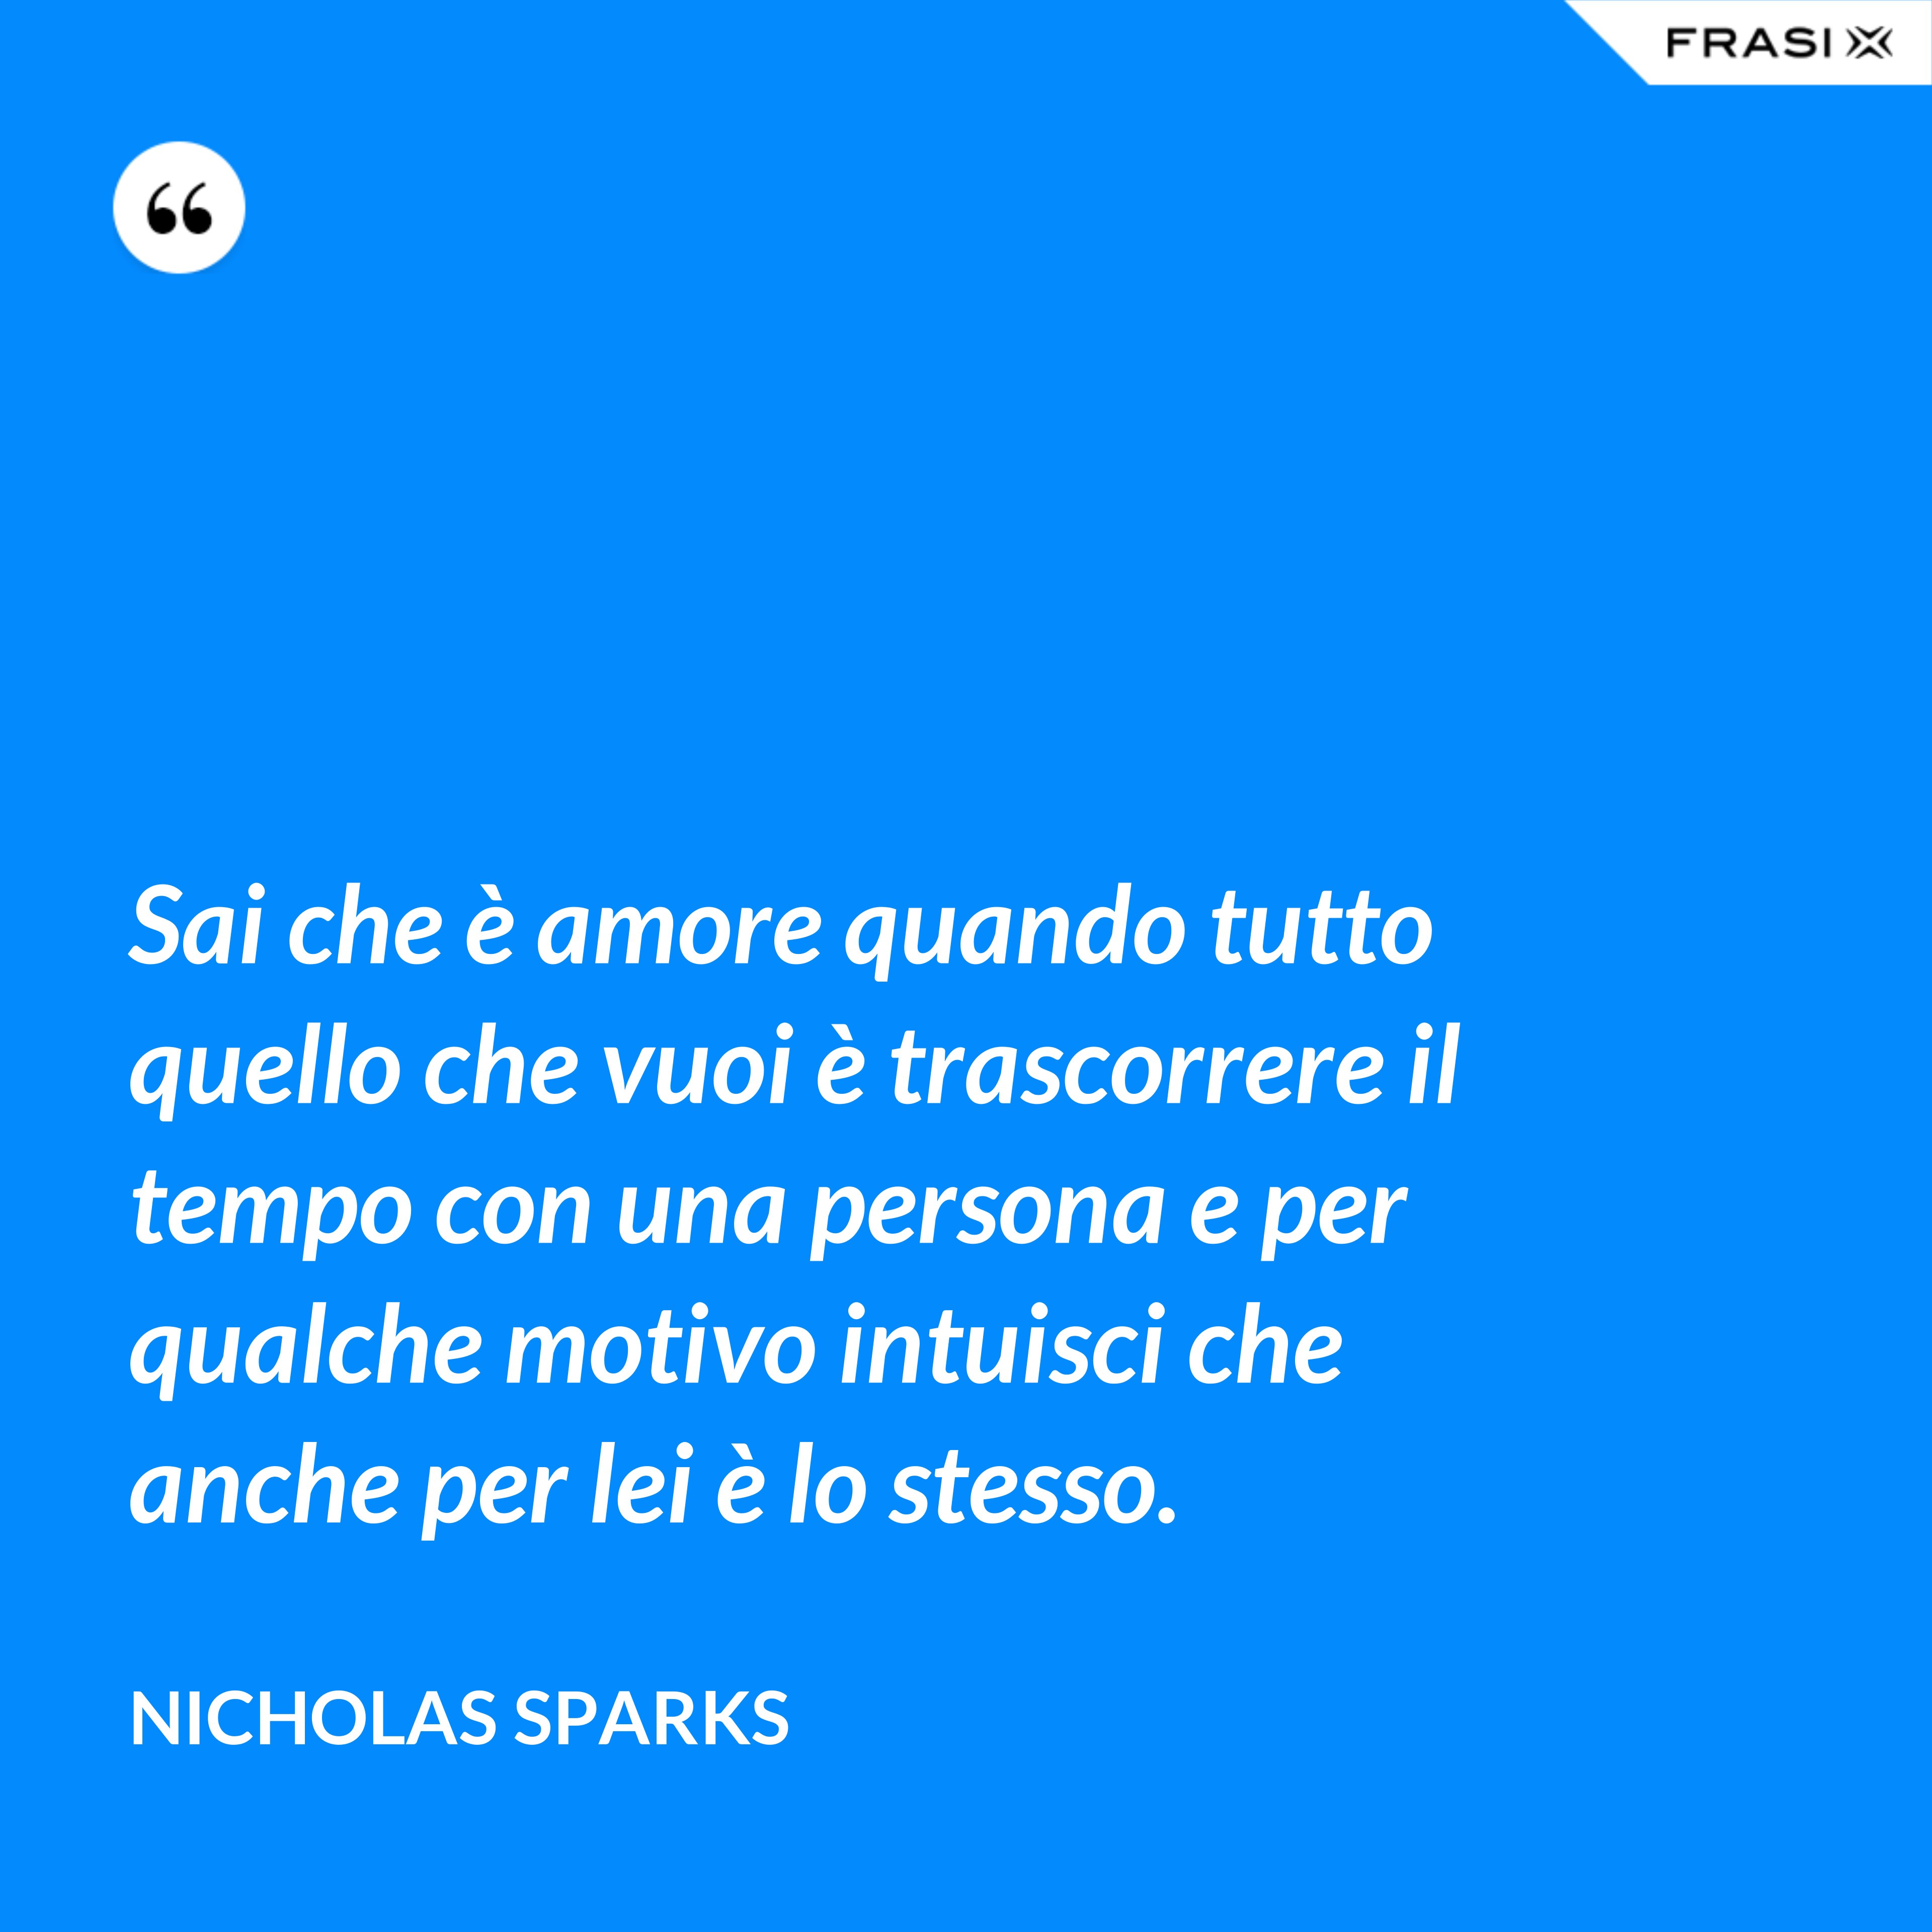 Sai che è amore quando tutto quello che vuoi è trascorrere il tempo con una persona e per qualche motivo intuisci che anche per lei è lo stesso. - Nicholas Sparks